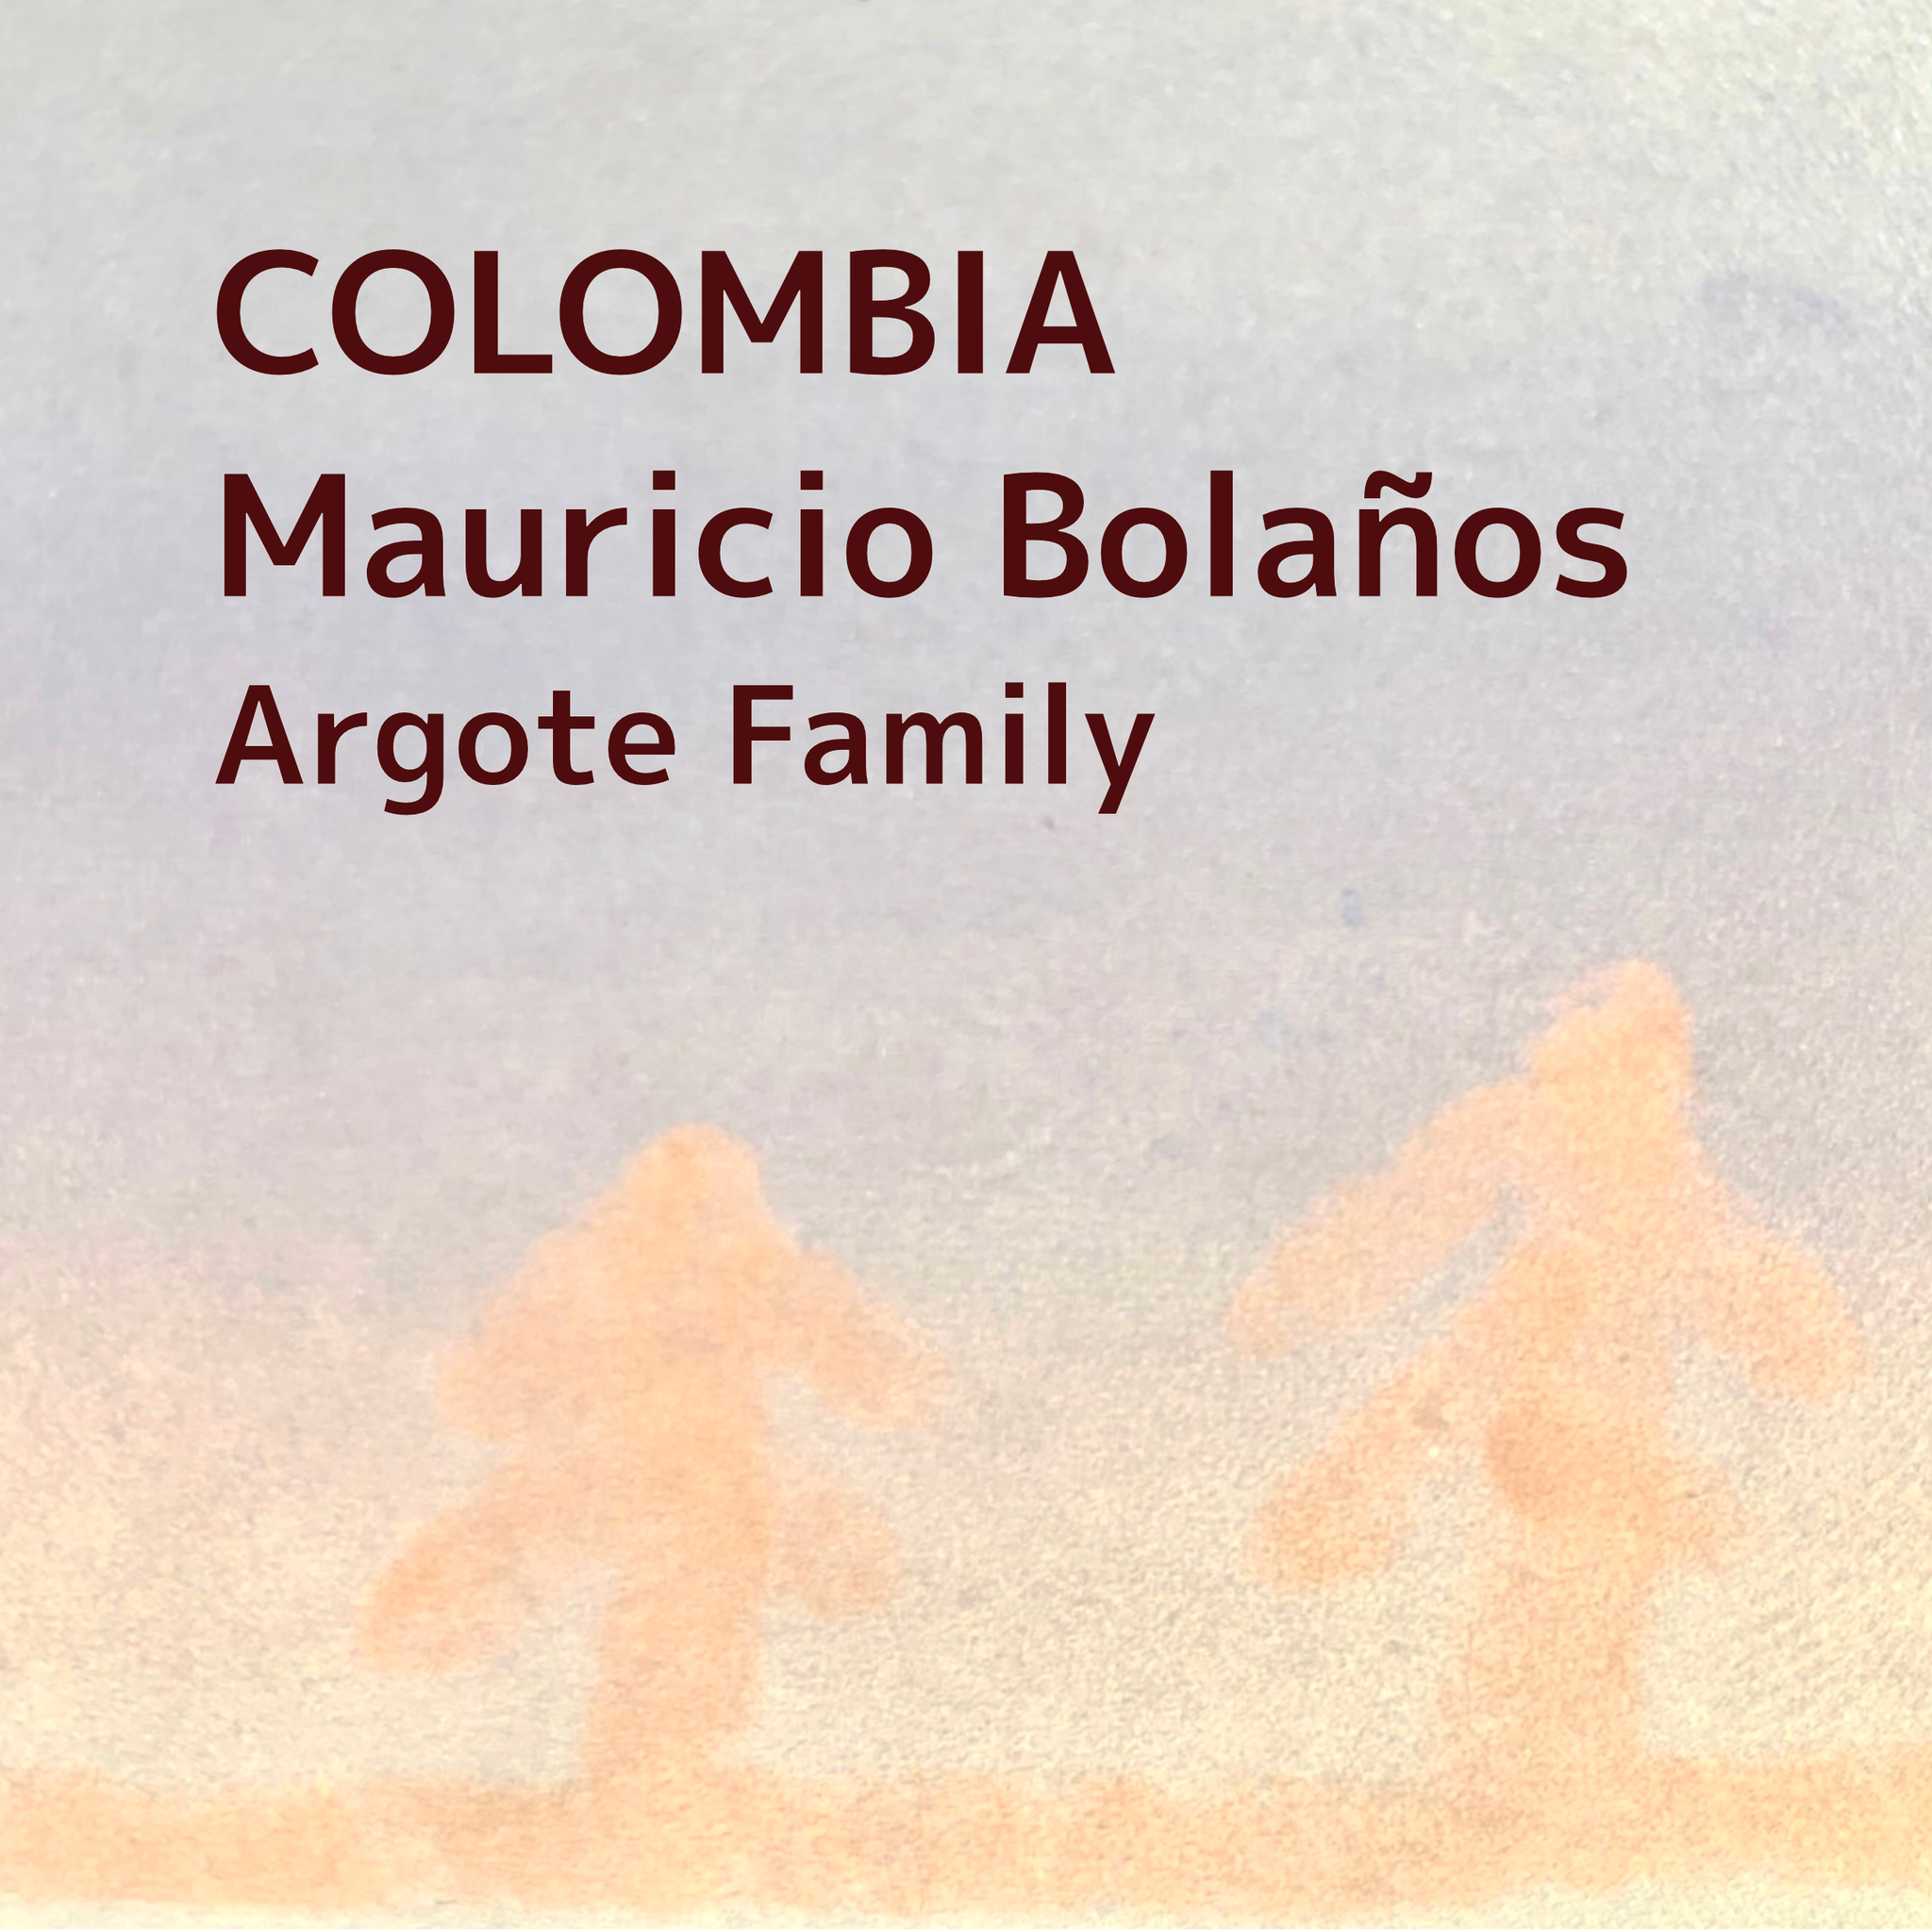 COLOMBIA/Mauricio Bolaños